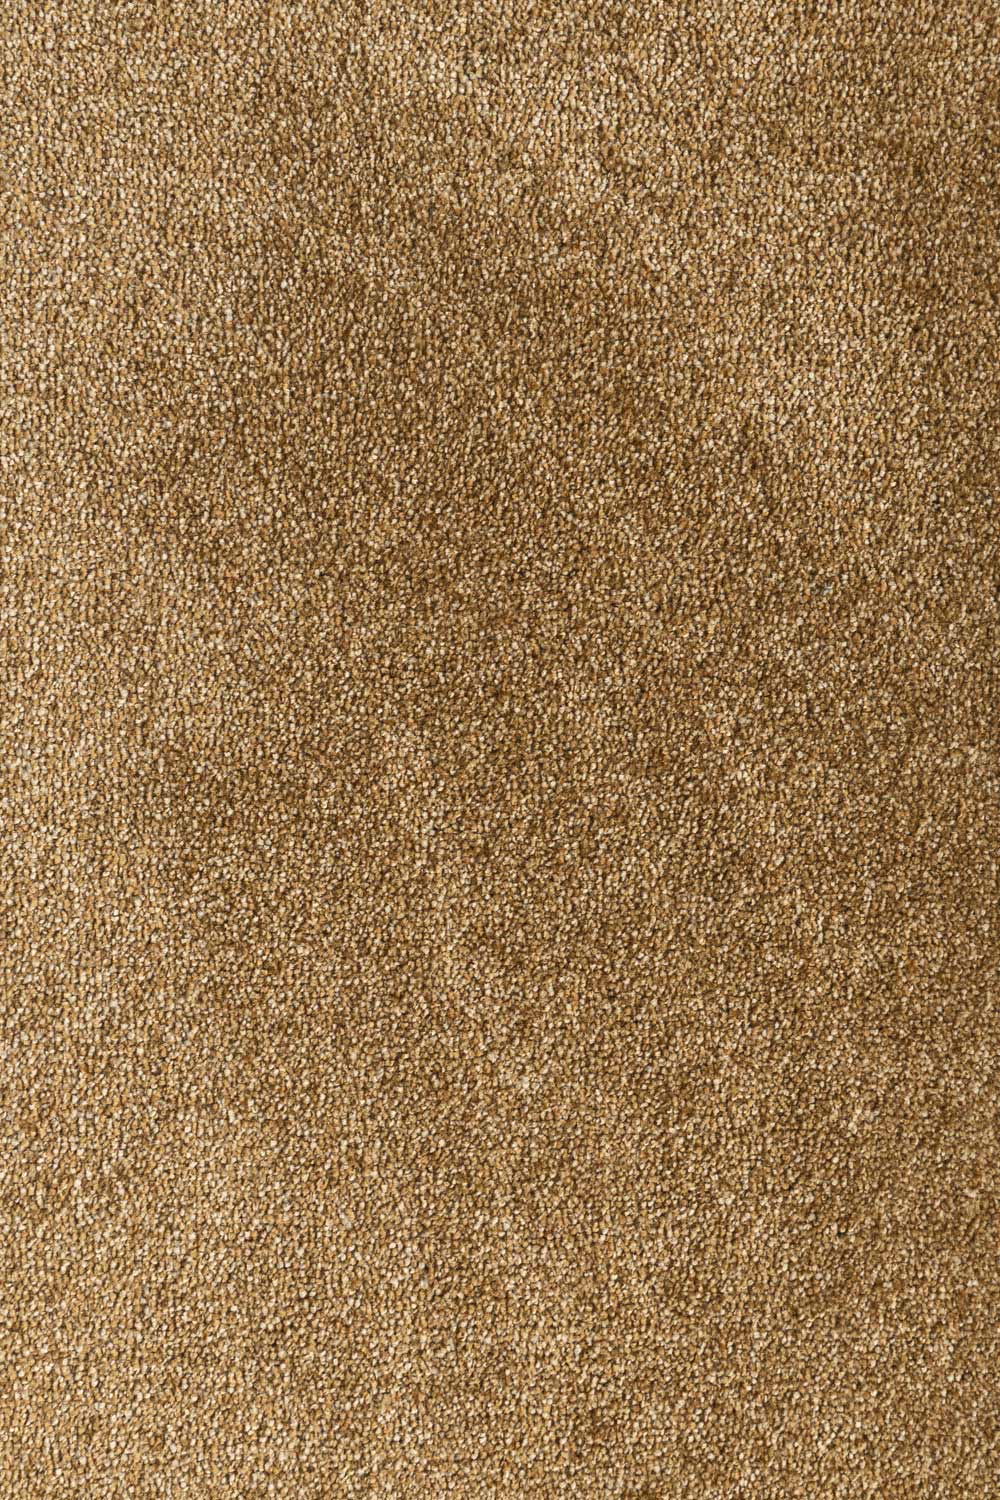 Metrážny koberec TEXAS 52 500 cm